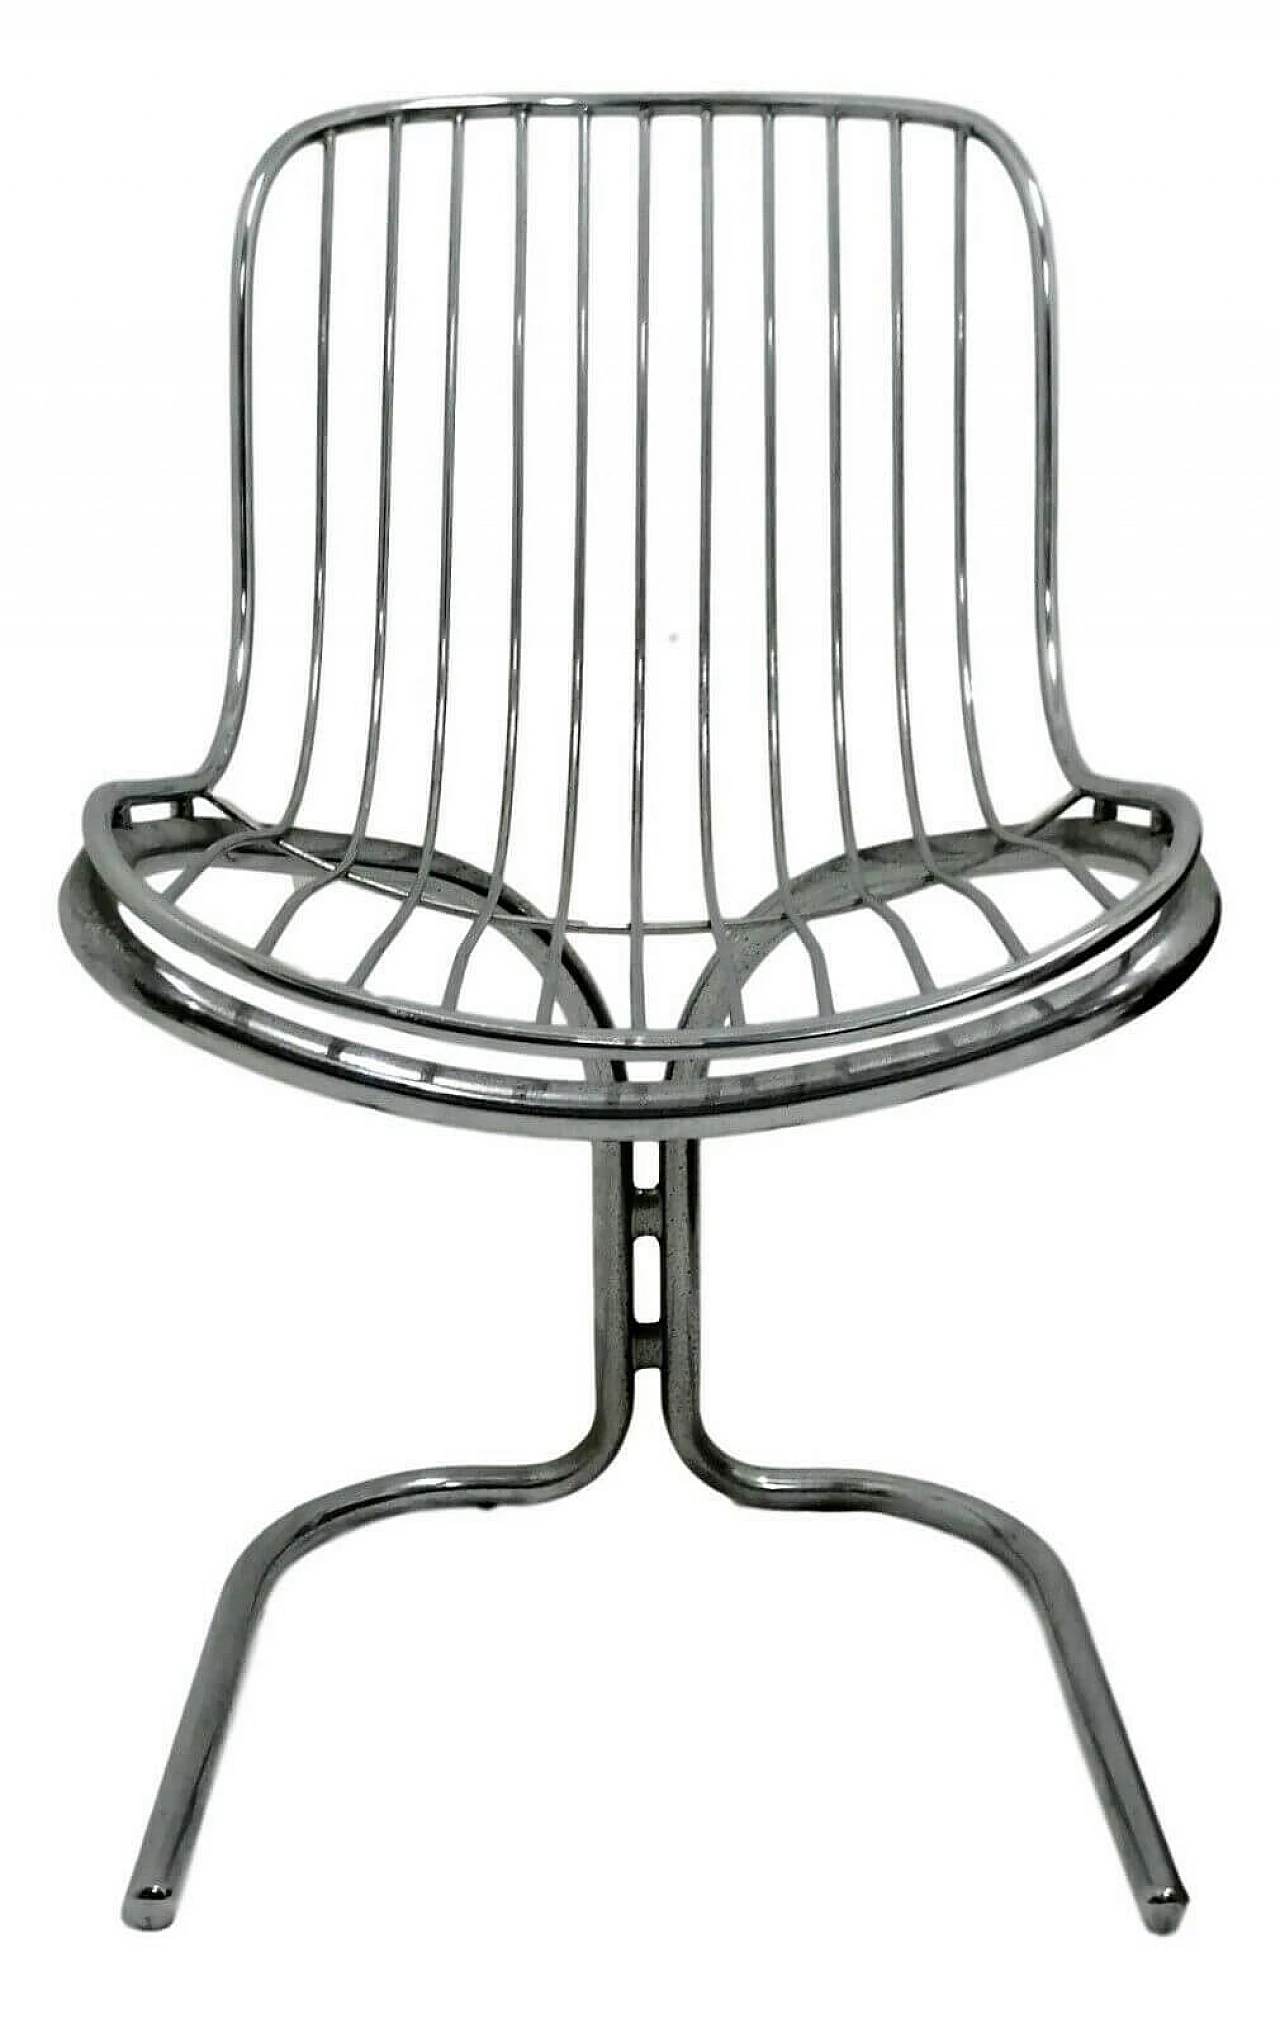 Radiofreccia chair by Gastone Rinaldi for Rima, 70's 1168609